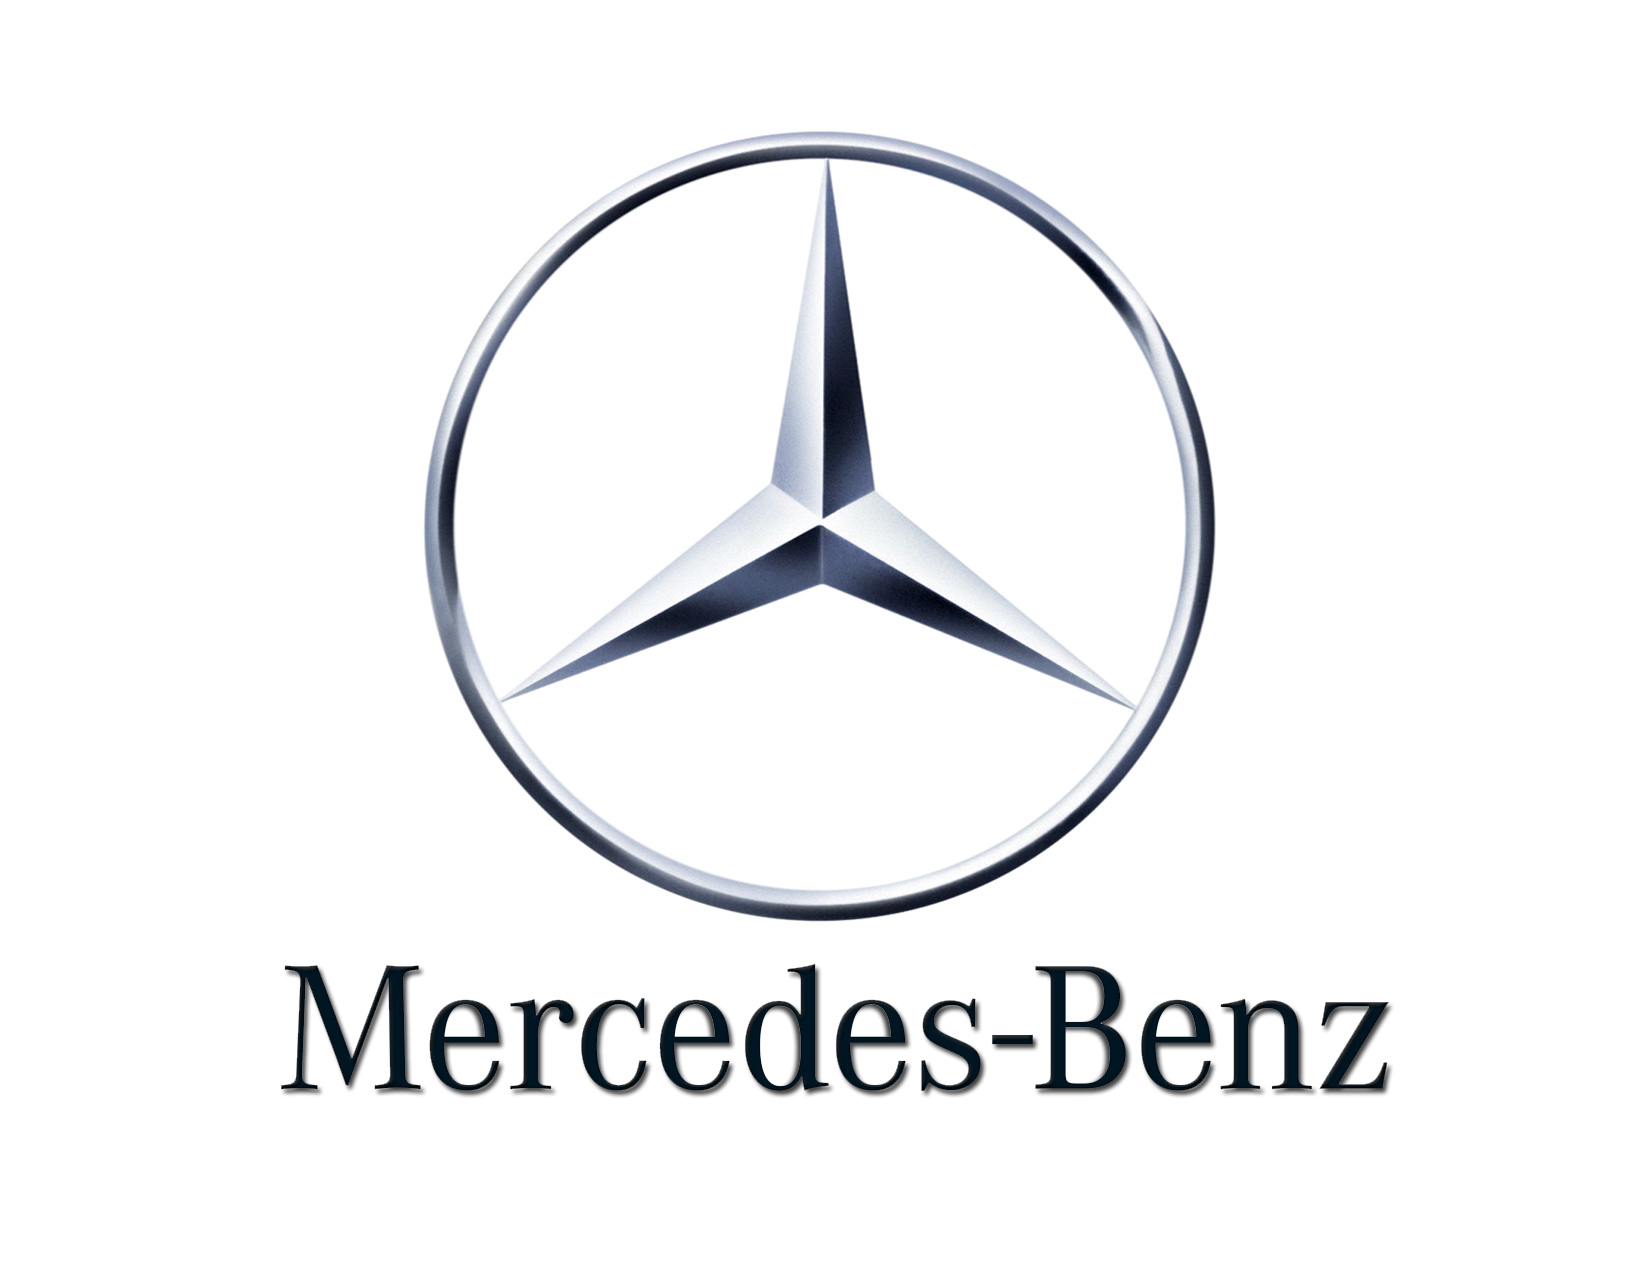 Mercedes-Benz Tuyển Dụng Thực Tập Sinh Phát Triển Kinh Doanh Full-time